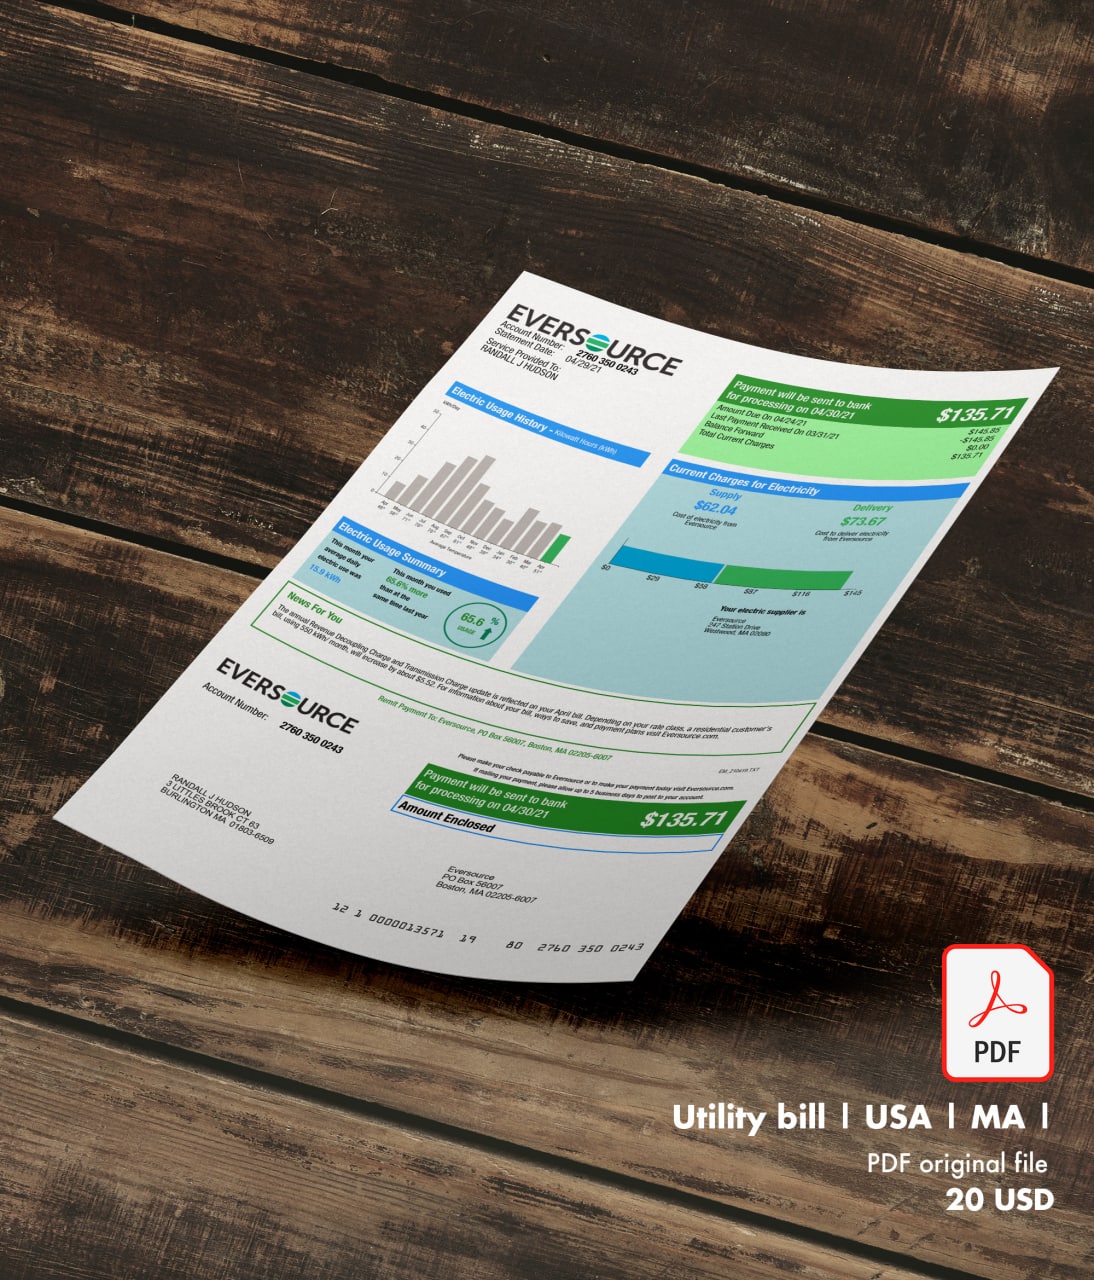 Utility bill | Eversource | USA | MA1